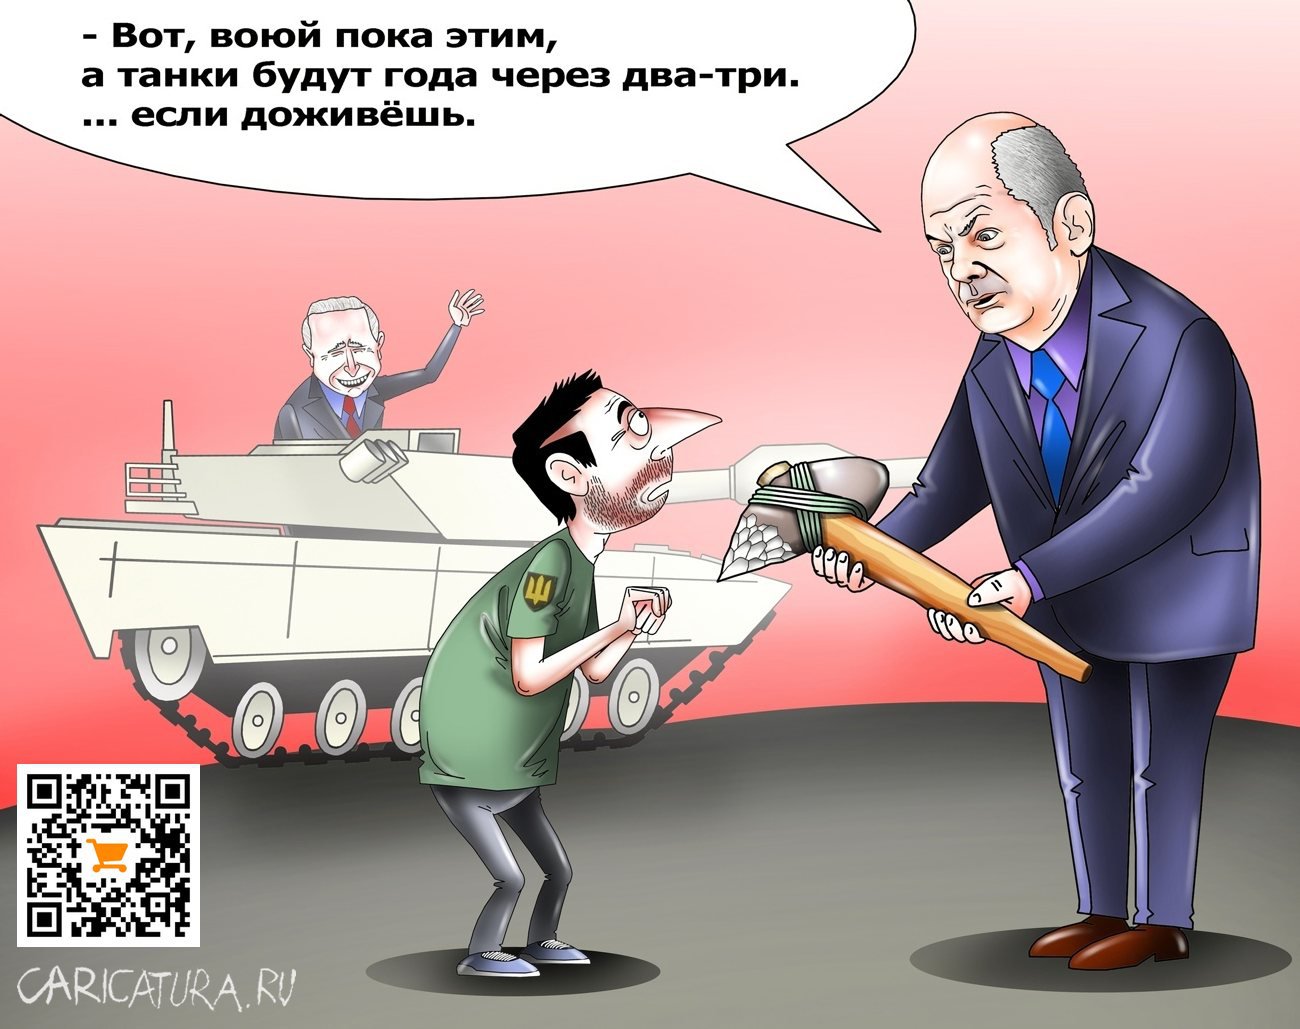 Карикатура "Танки будут...", Сергей Корсун